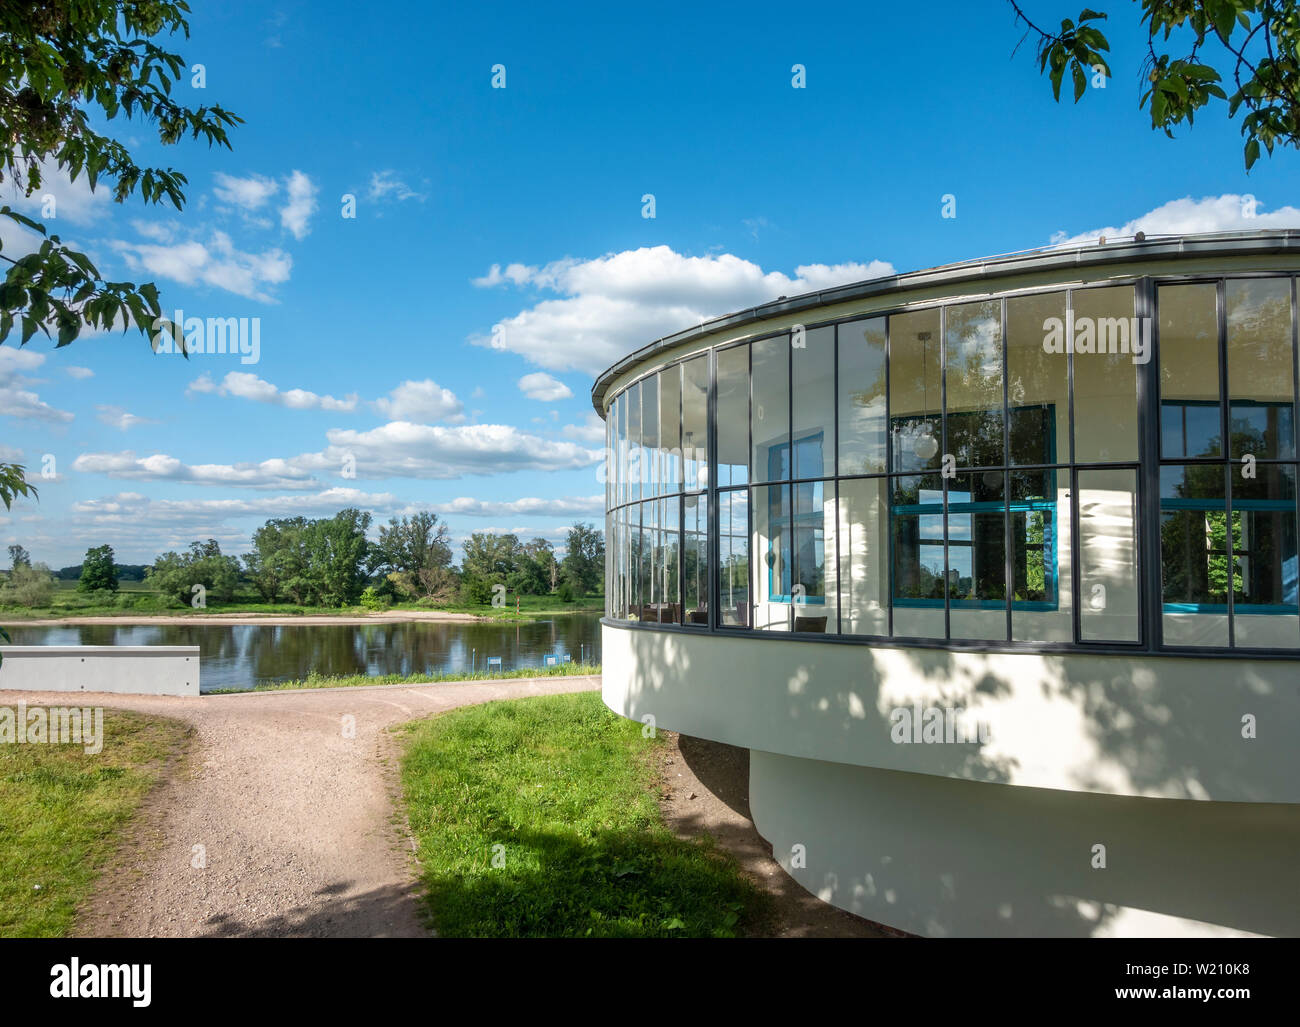 Kornhaus restaurante a orillas del río Elba en Dessau diseñada en 1929 por el arquitecto Carl Fieger quien fue profesor de la Bauhaus. Foto de stock